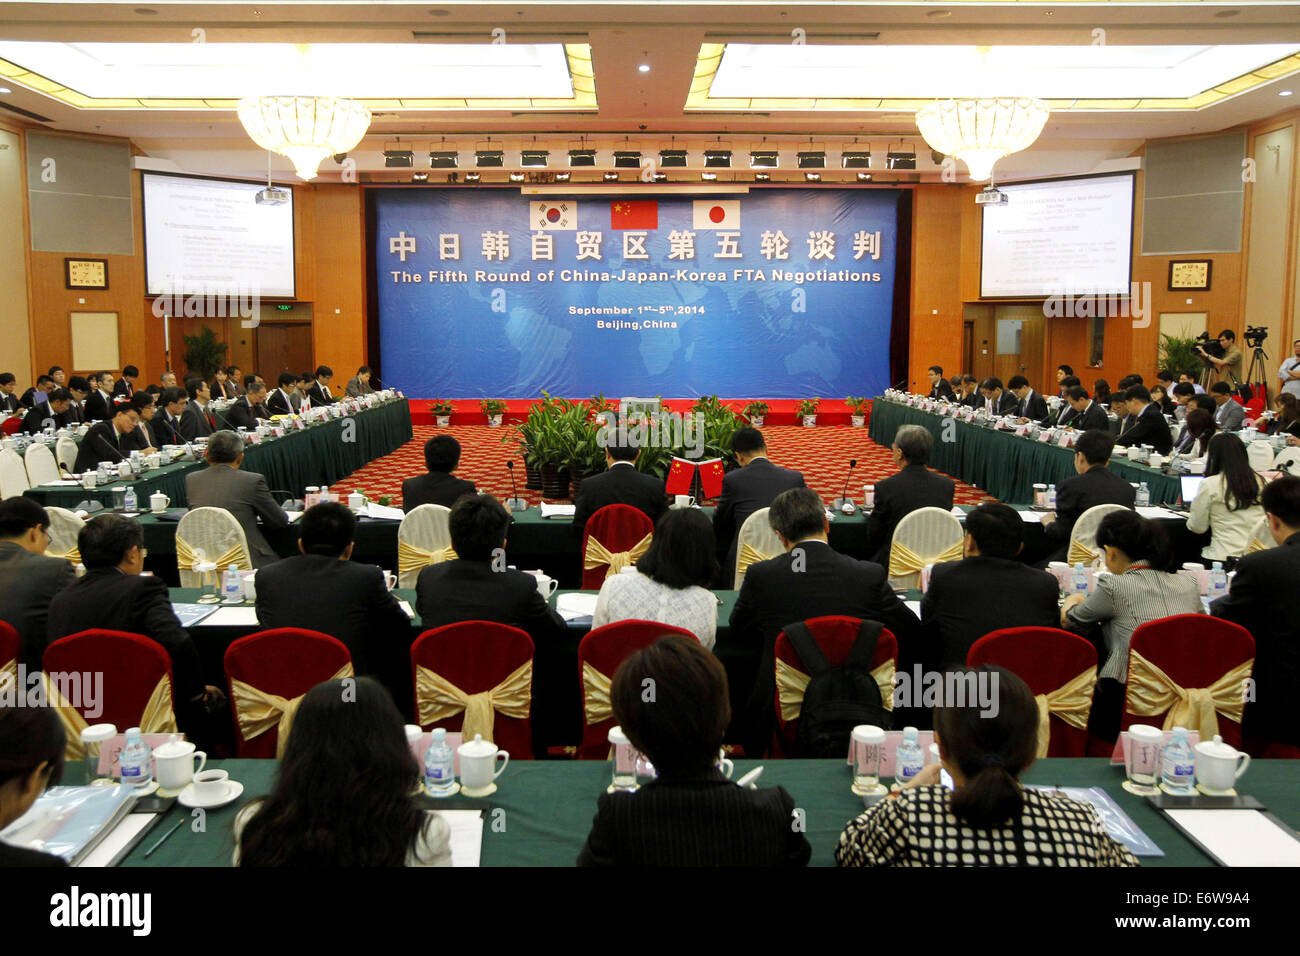 Beijing, Chine. 1er sept 2014. La cinquième série de négociations Chine-japon-Corée est tenue à Beijing, capitale de Chine, le 1er septembre 2014. La cinquième série de négociations trilatérales sur l'accord de libre-échange (ALE) entre la Chine, le Japon et la Corée du Sud a commencé lundi et durera jusqu'au 5 septembre. Source : Xinhua/Alamy Live News Banque D'Images